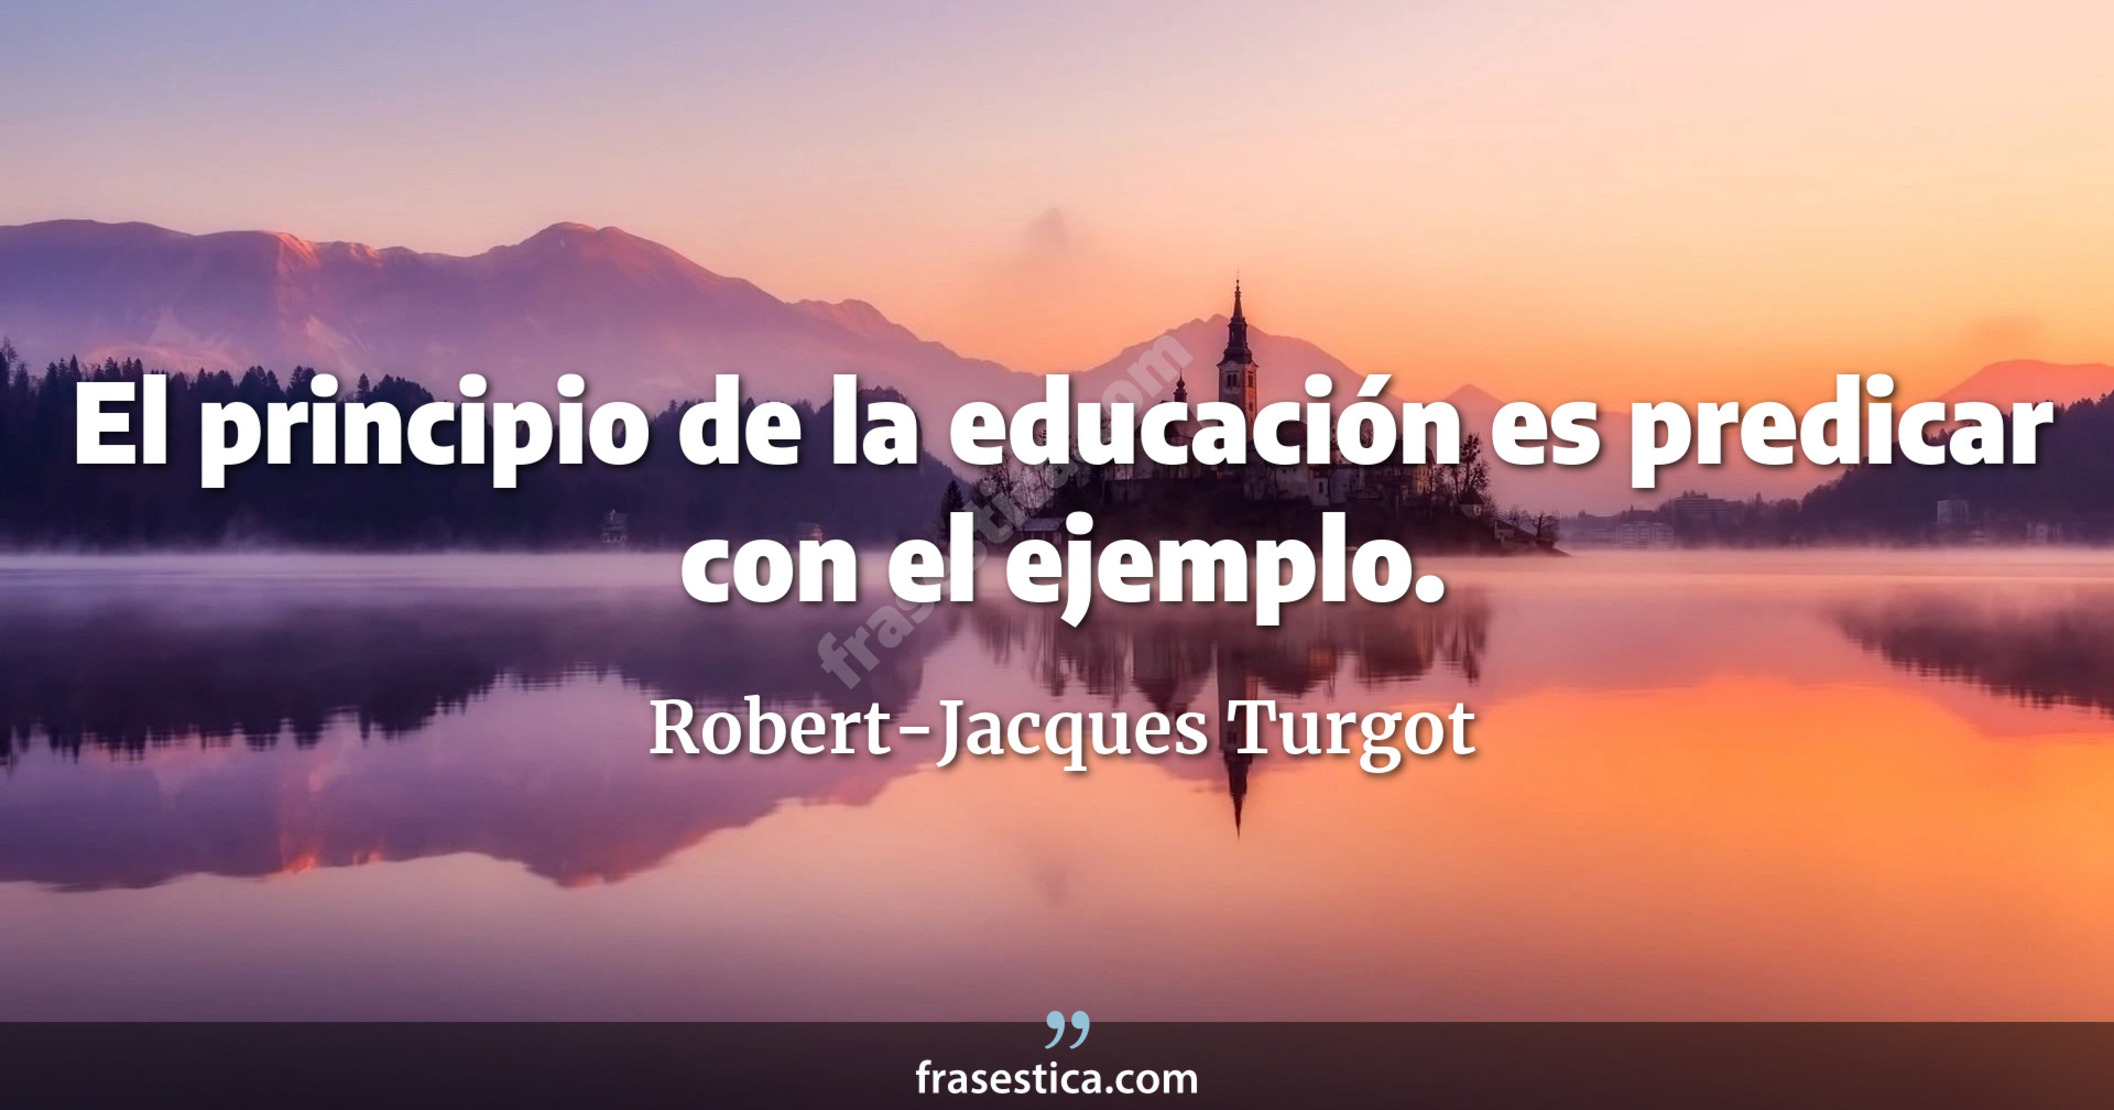 El principio de la educación es predicar con el ejemplo. - Robert-Jacques Turgot